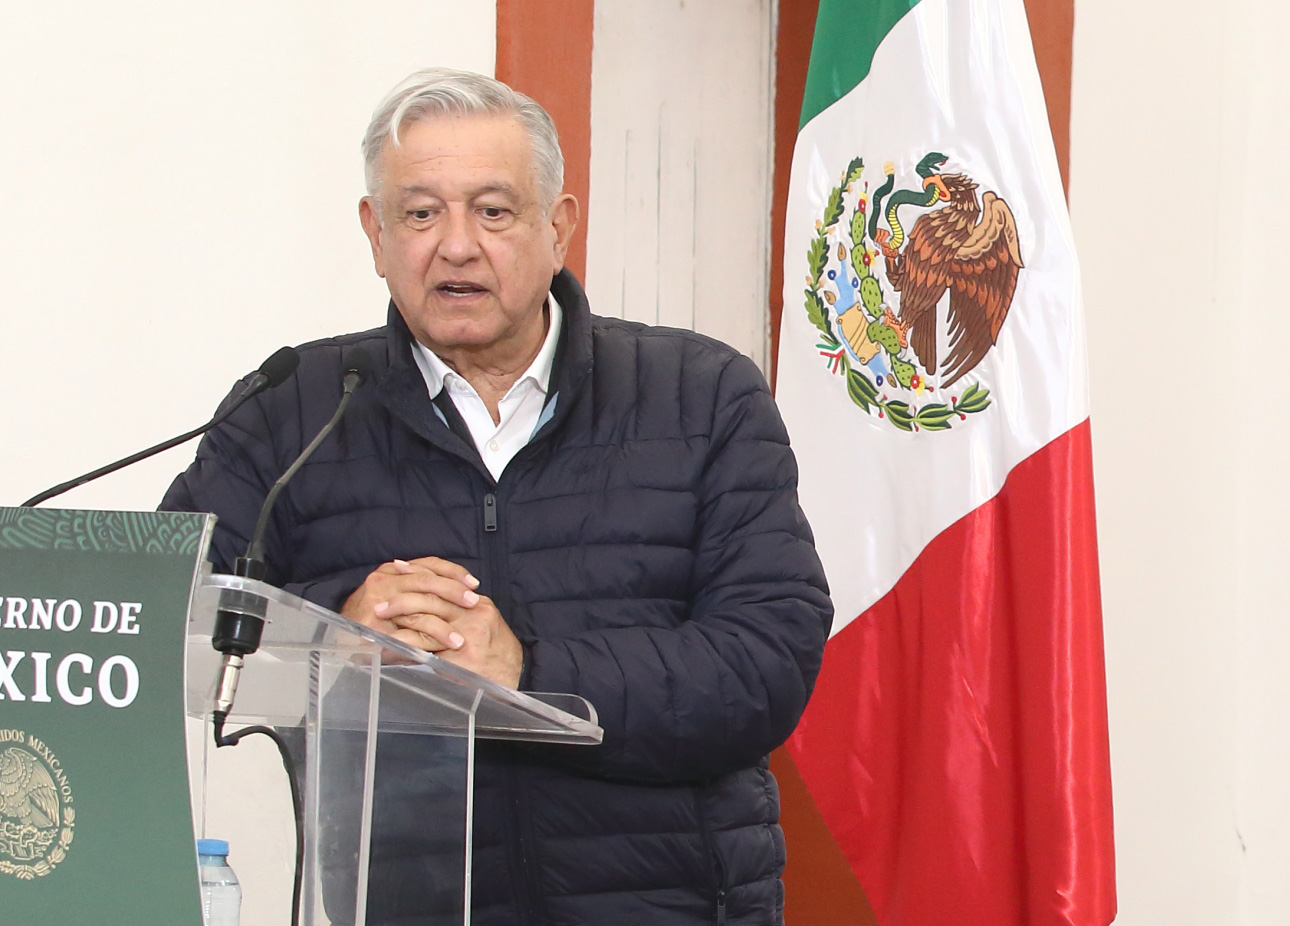 El choque de López Obrador y los intelectuales